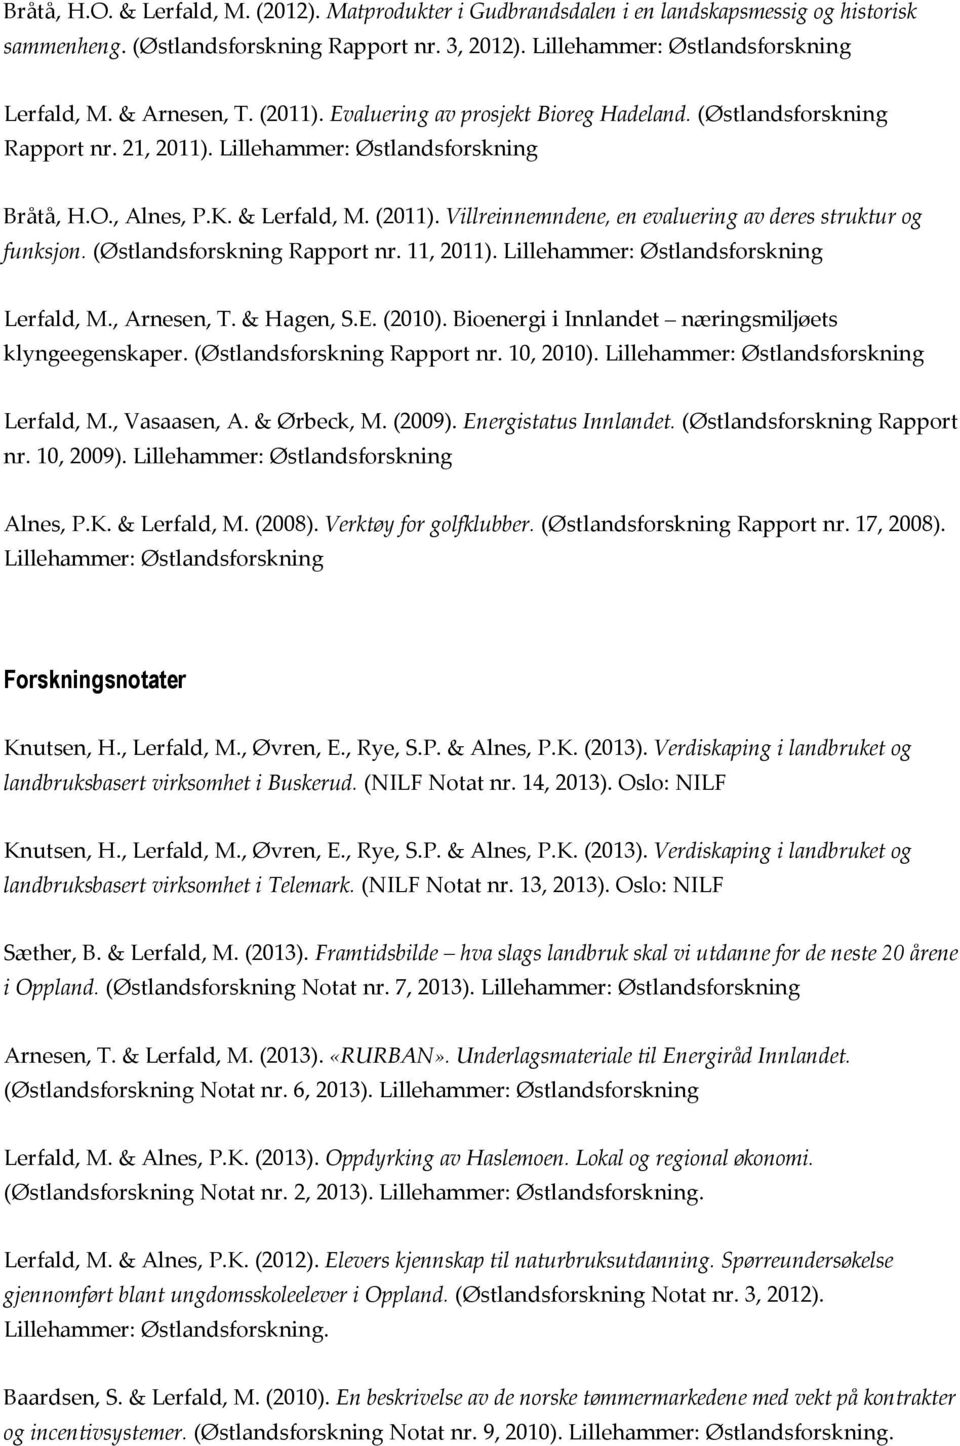 Villreinnemndene, en evaluering av deres struktur og funksjon. (Østlandsforskning Rapport nr. 11, 2011). Lillehammer: Østlandsforskning, Arnesen, T. & Hagen, S.E. (2010).